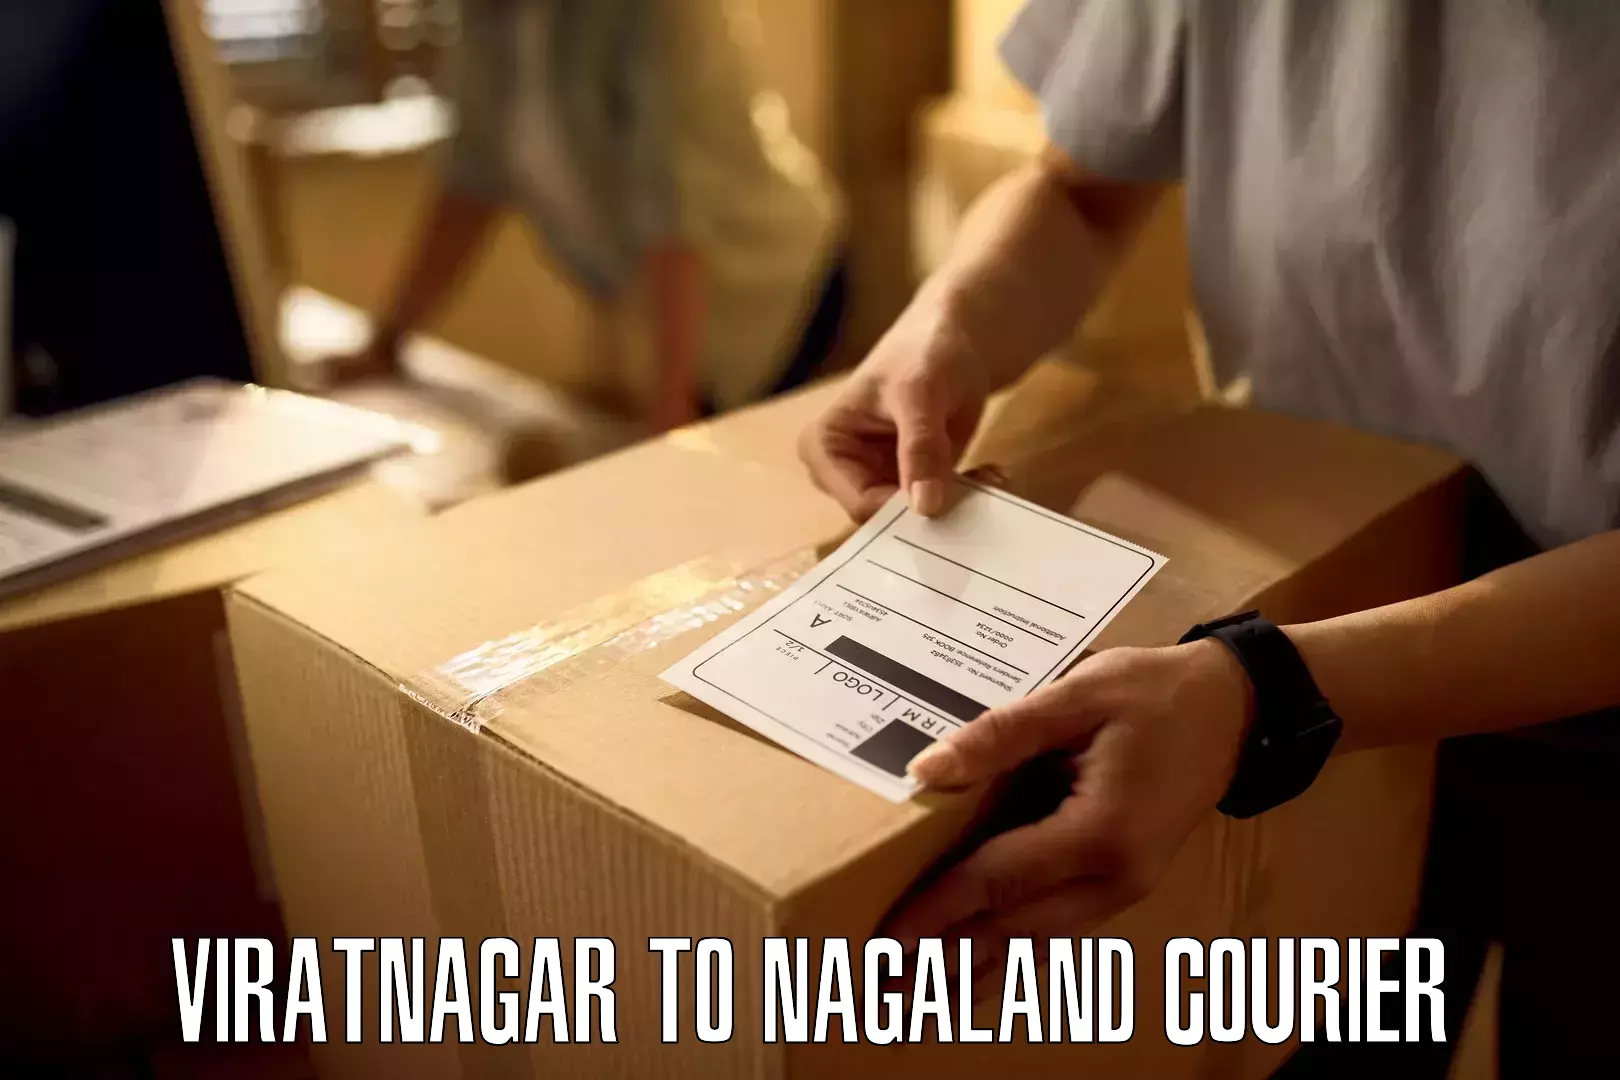 Next-day delivery options Viratnagar to Nagaland